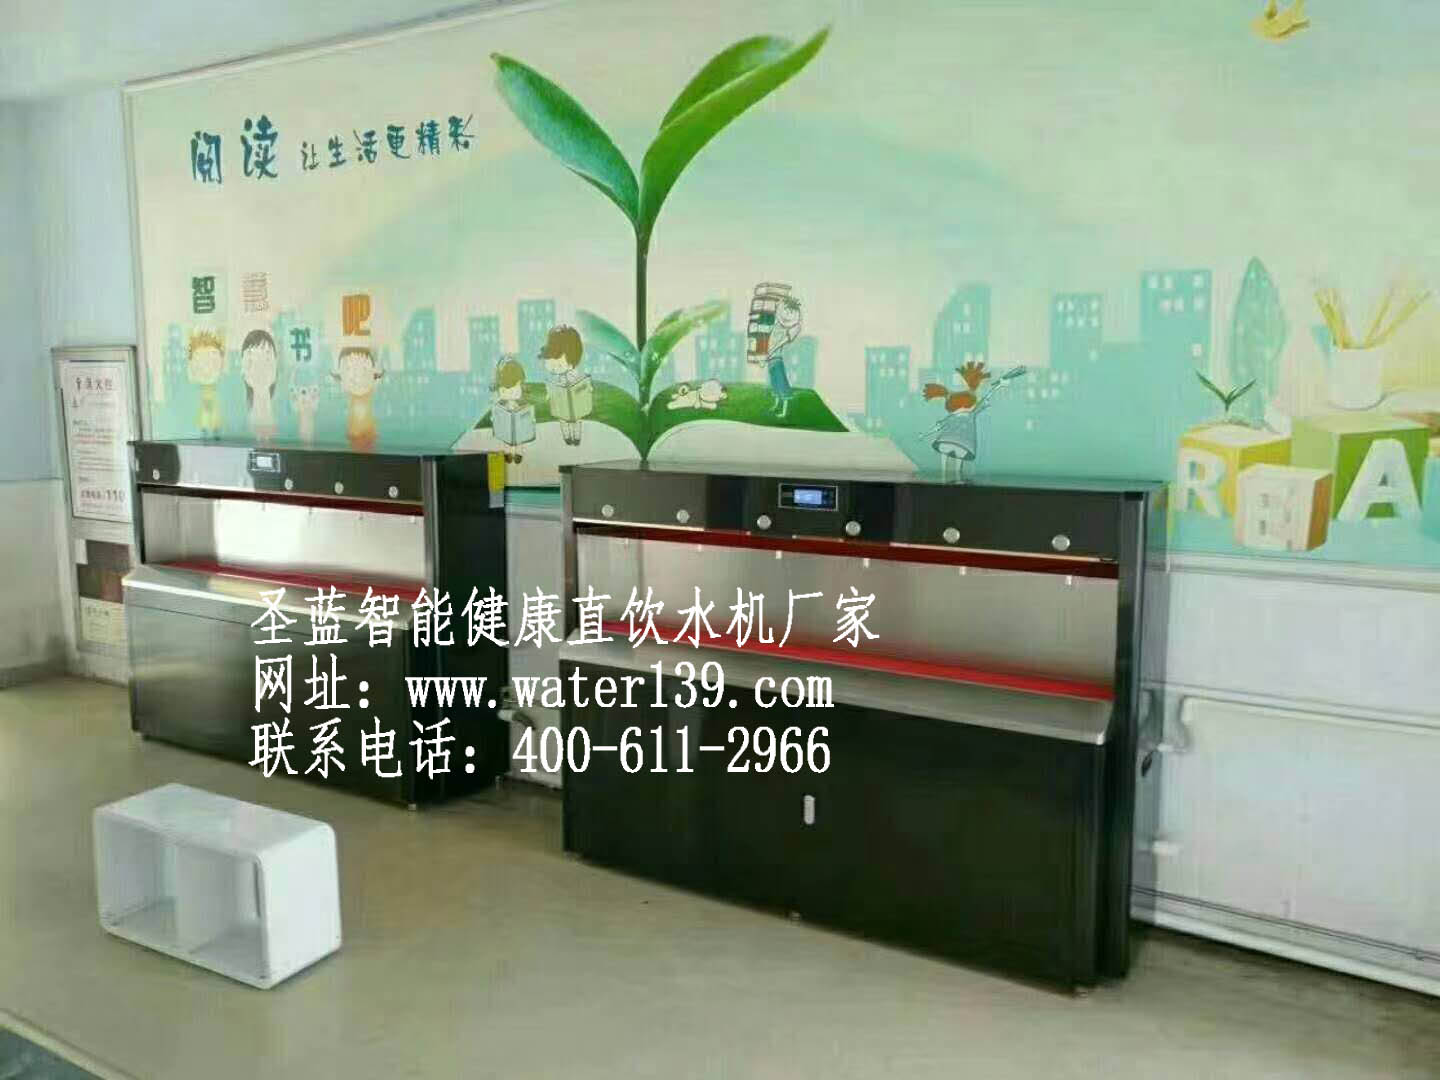 深圳圣蓝直饮水机公司教您怎么选择直饮水设备